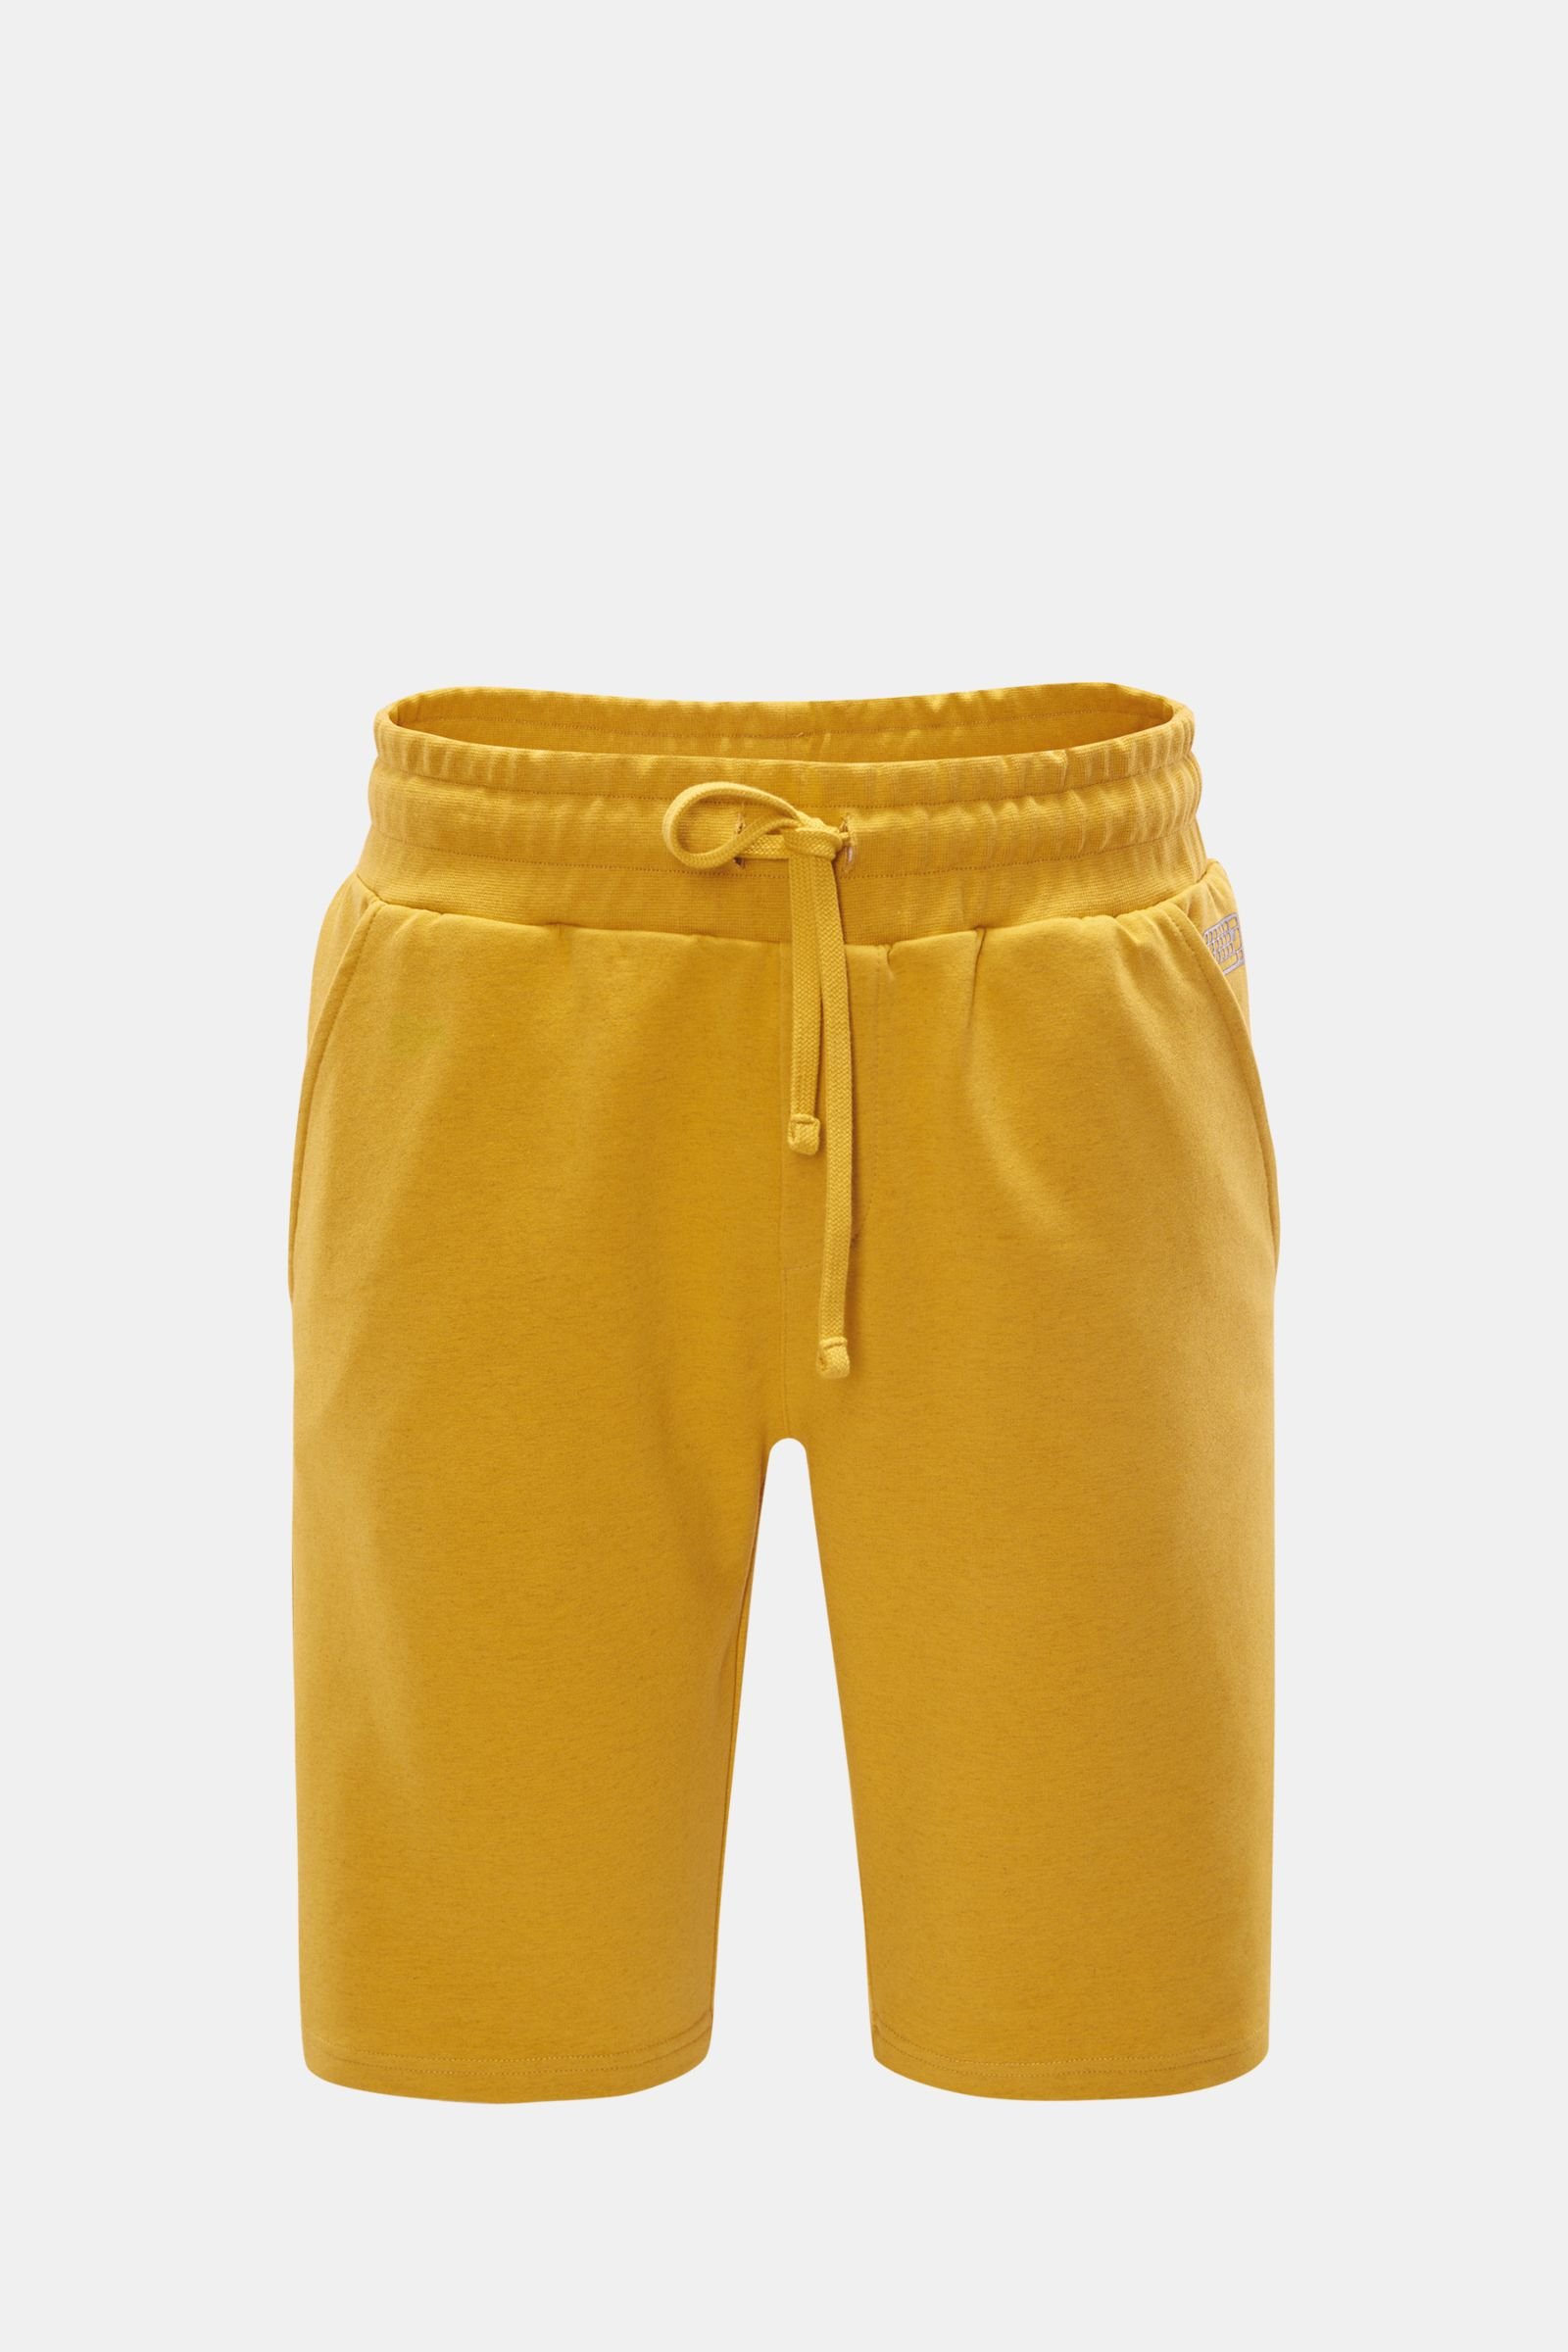 Sweat shorts yellow